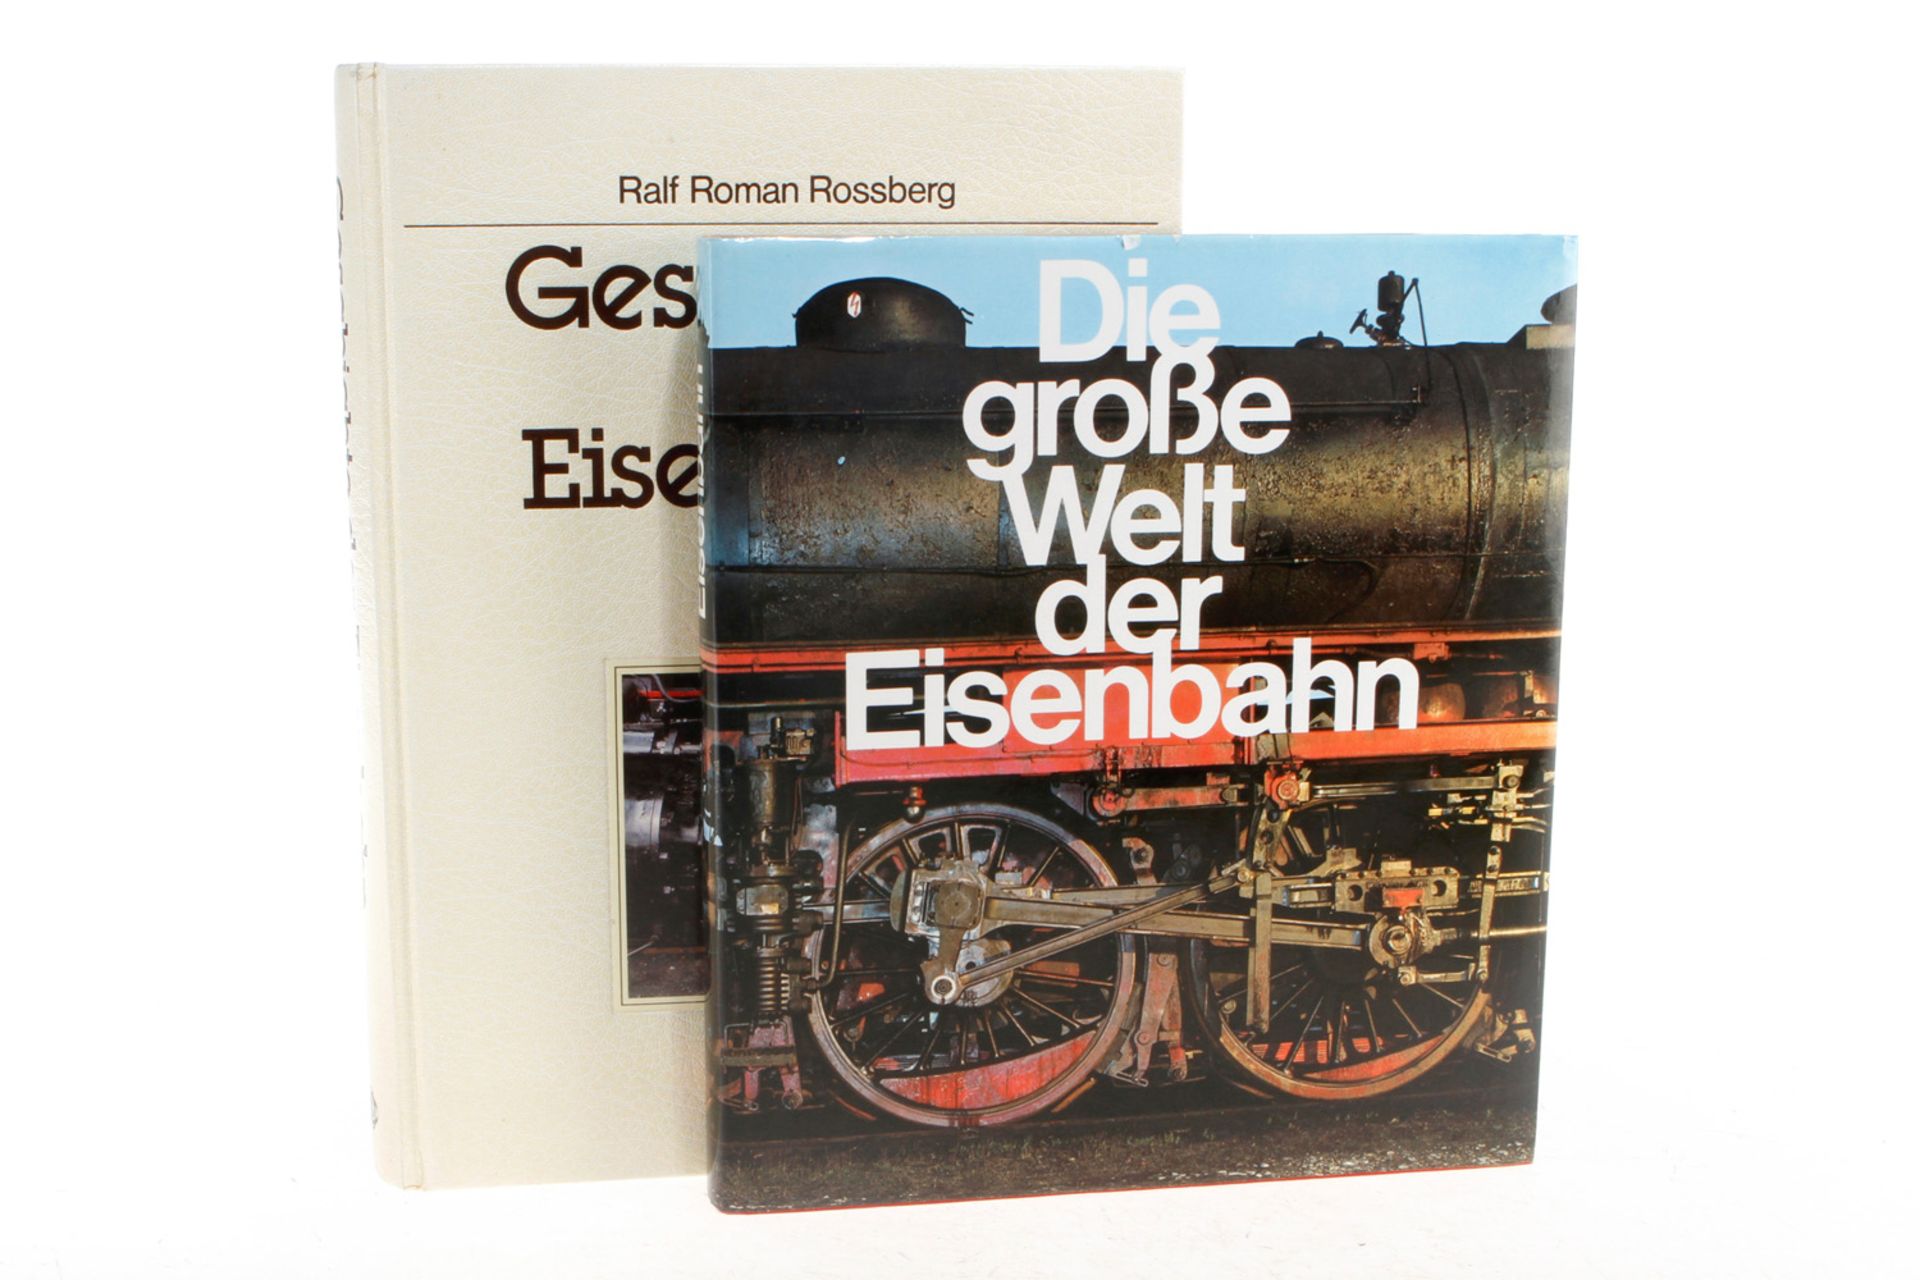 2 Bücher "Geschichte der Eisenbahn" und "Die große Welt der Eisenbahn", Alterungsspuren